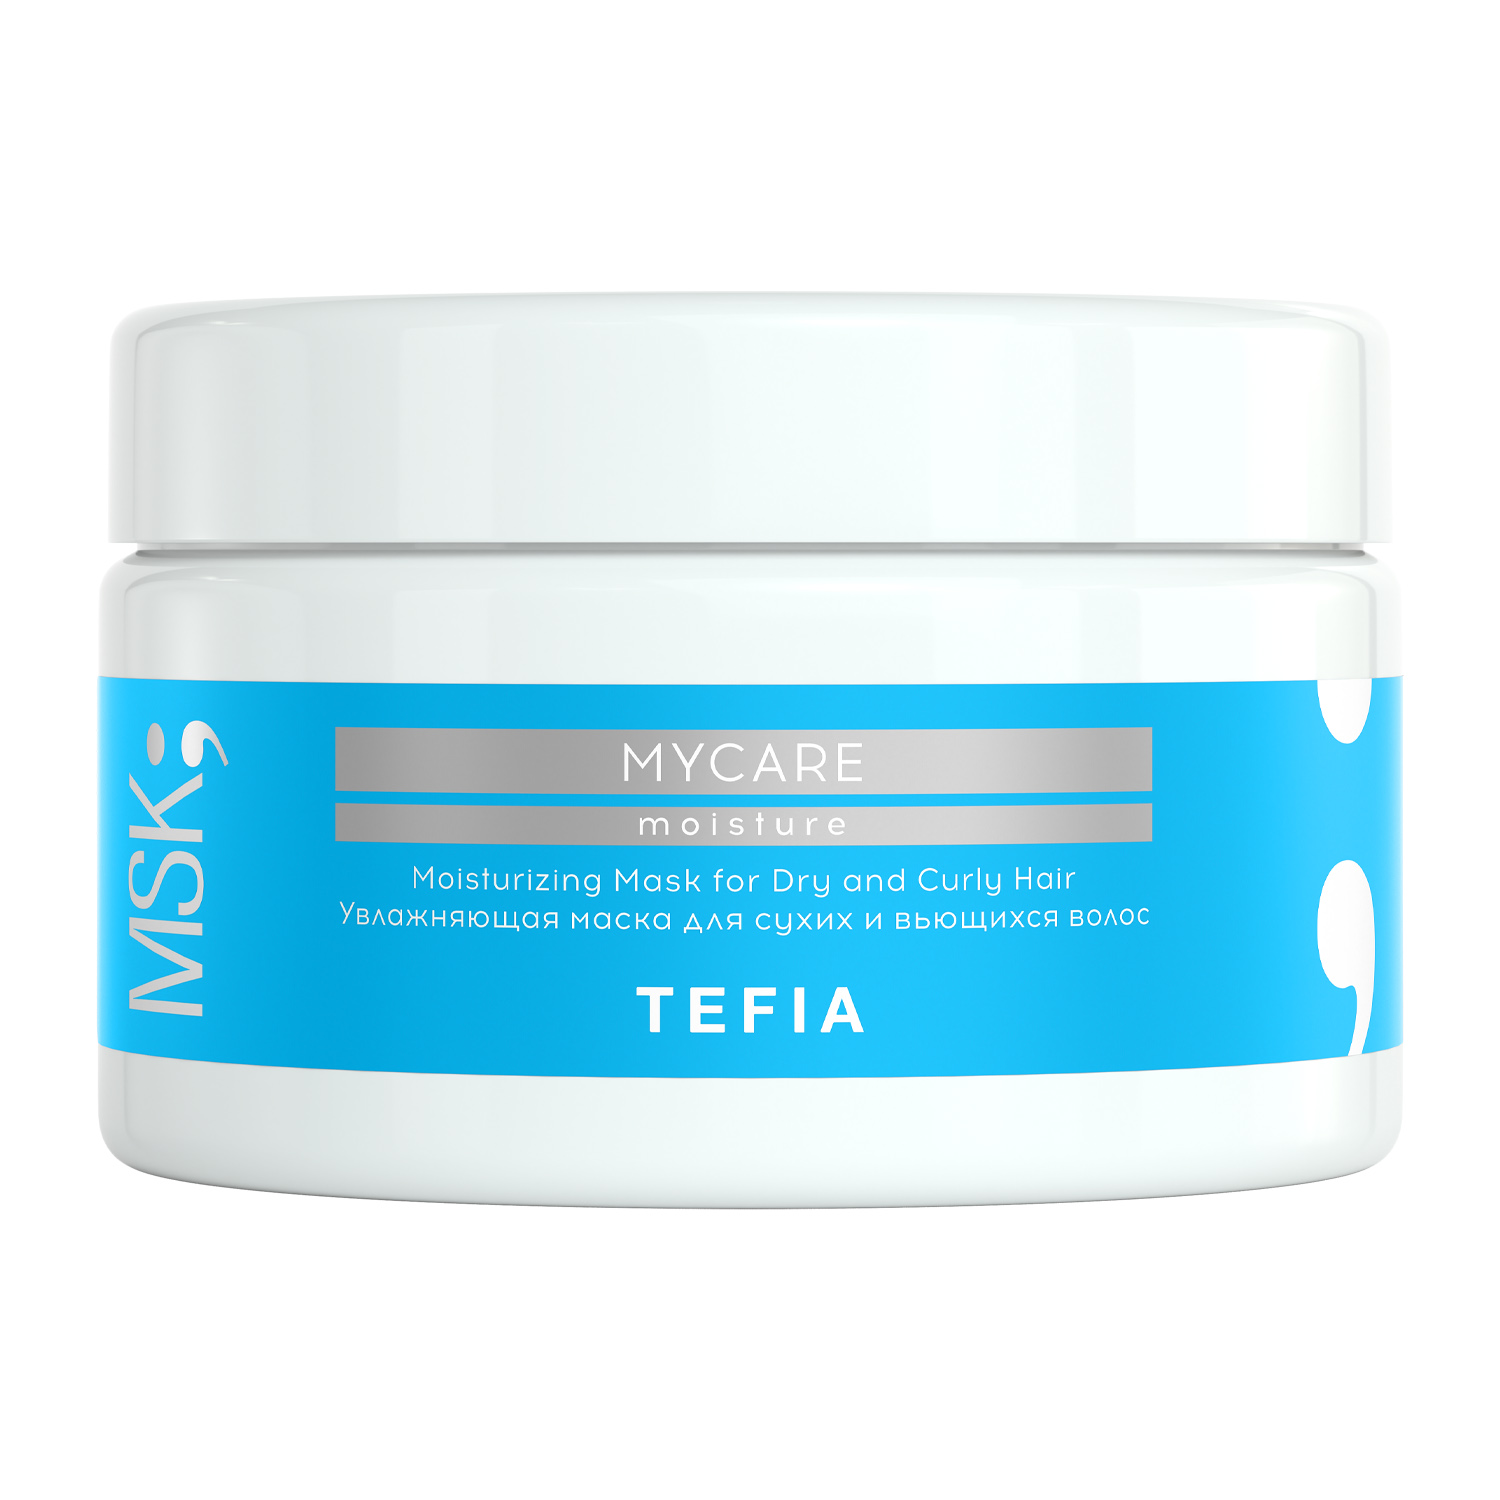 Tefia Увлажняющая маска для сухих и вьющихся волос, 250 мл (Tefia, Mycare) tefia mycare moisture маска увлажняющая для сухих и вьющихся волос 500 г 500 мл банка